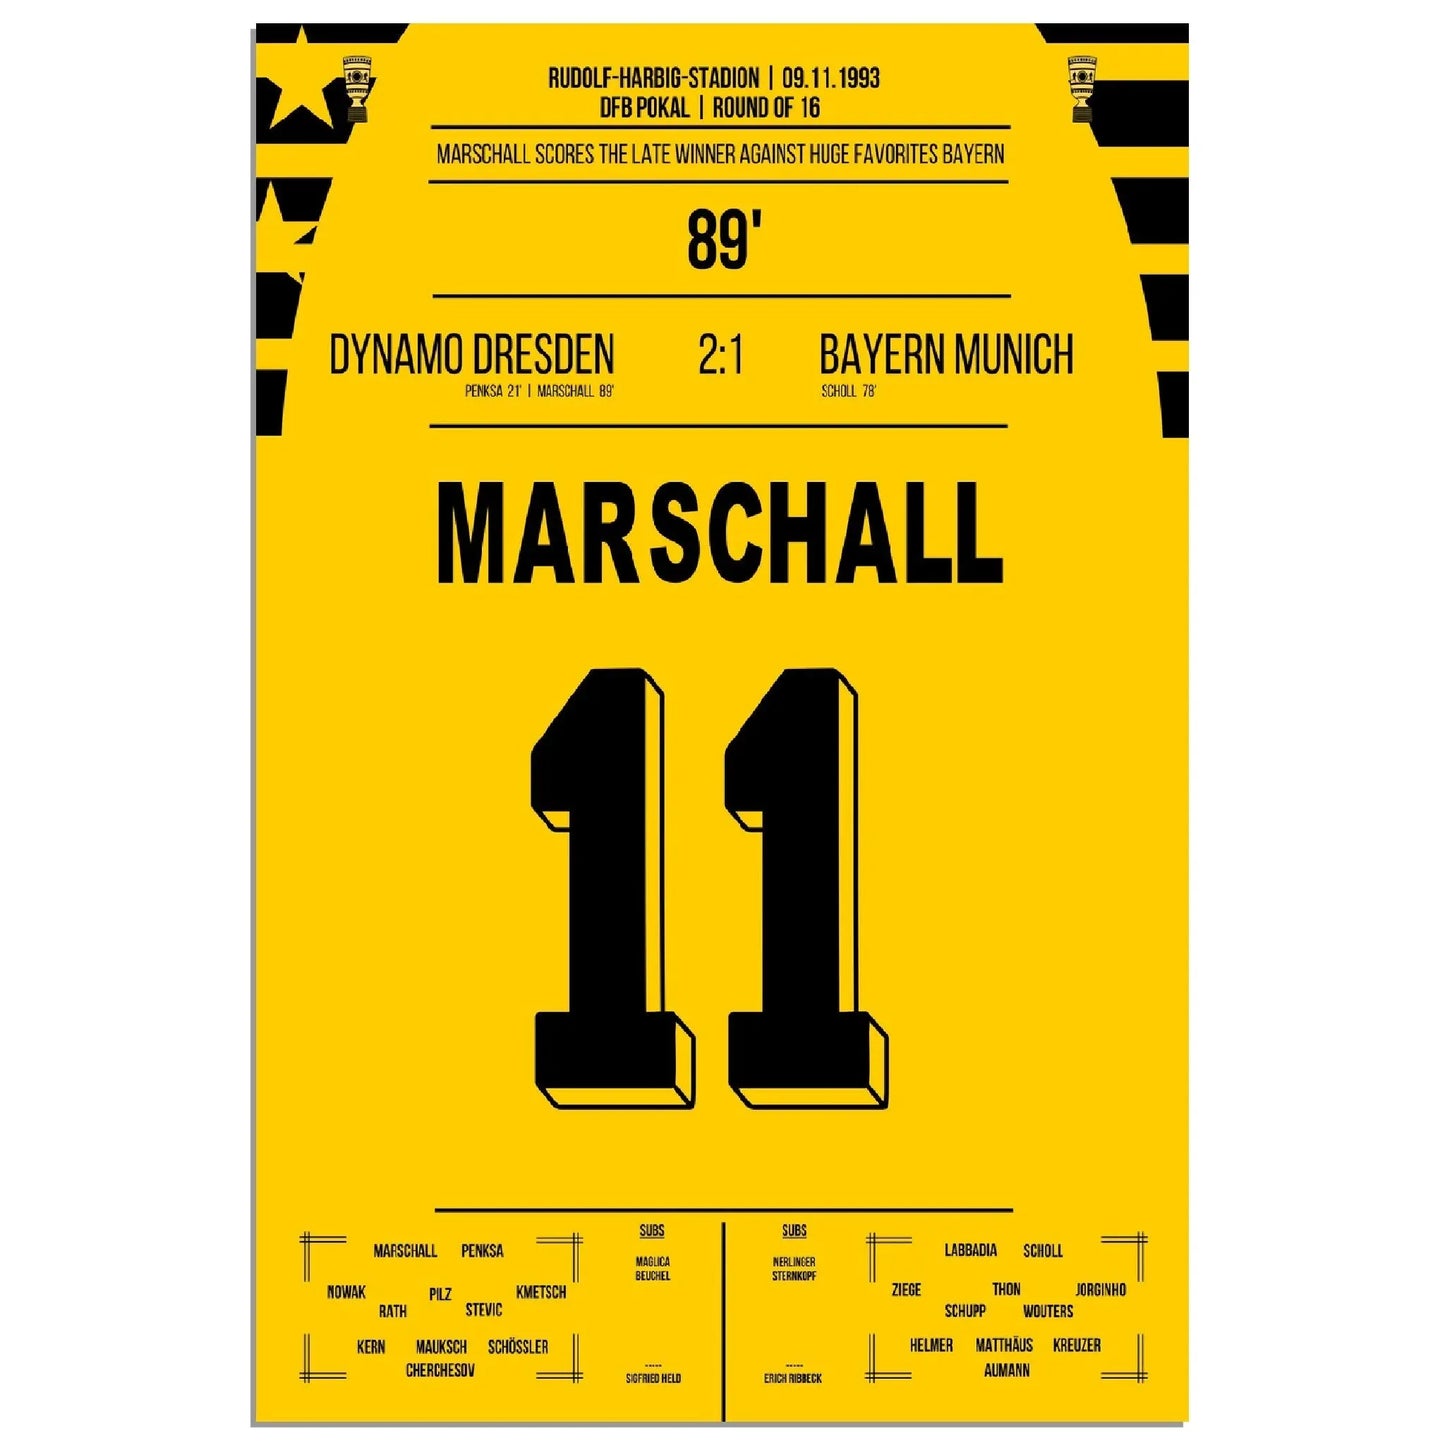 Pokalsensation durch Marschall - Dresden besiegt Bayern im DFB Pokal Achtelfinale 1993 